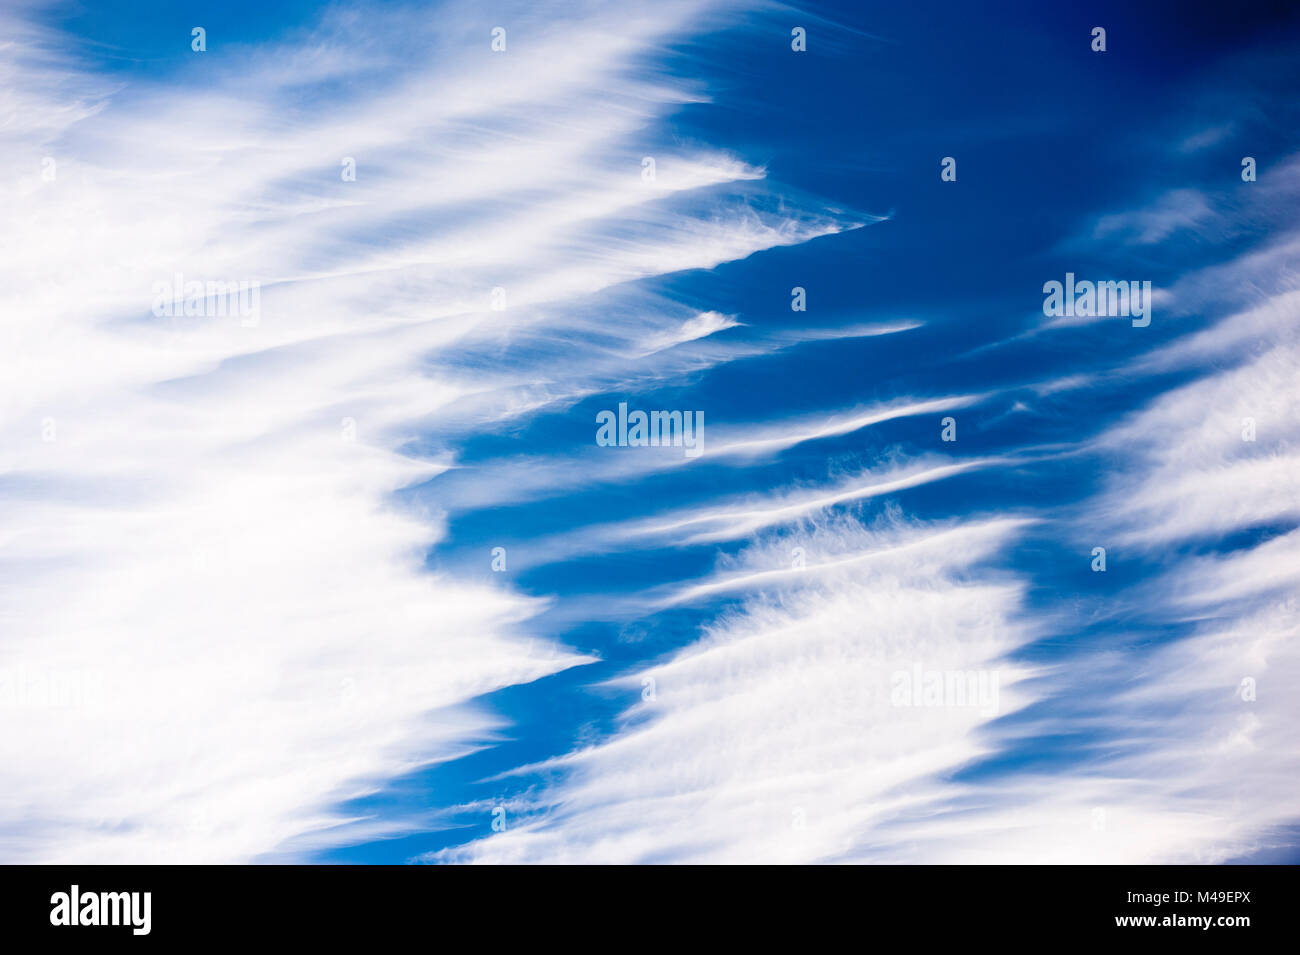 Zirruswolken angezeigte Windscherung, Brechin, Schottland, UK, September. Stockfoto